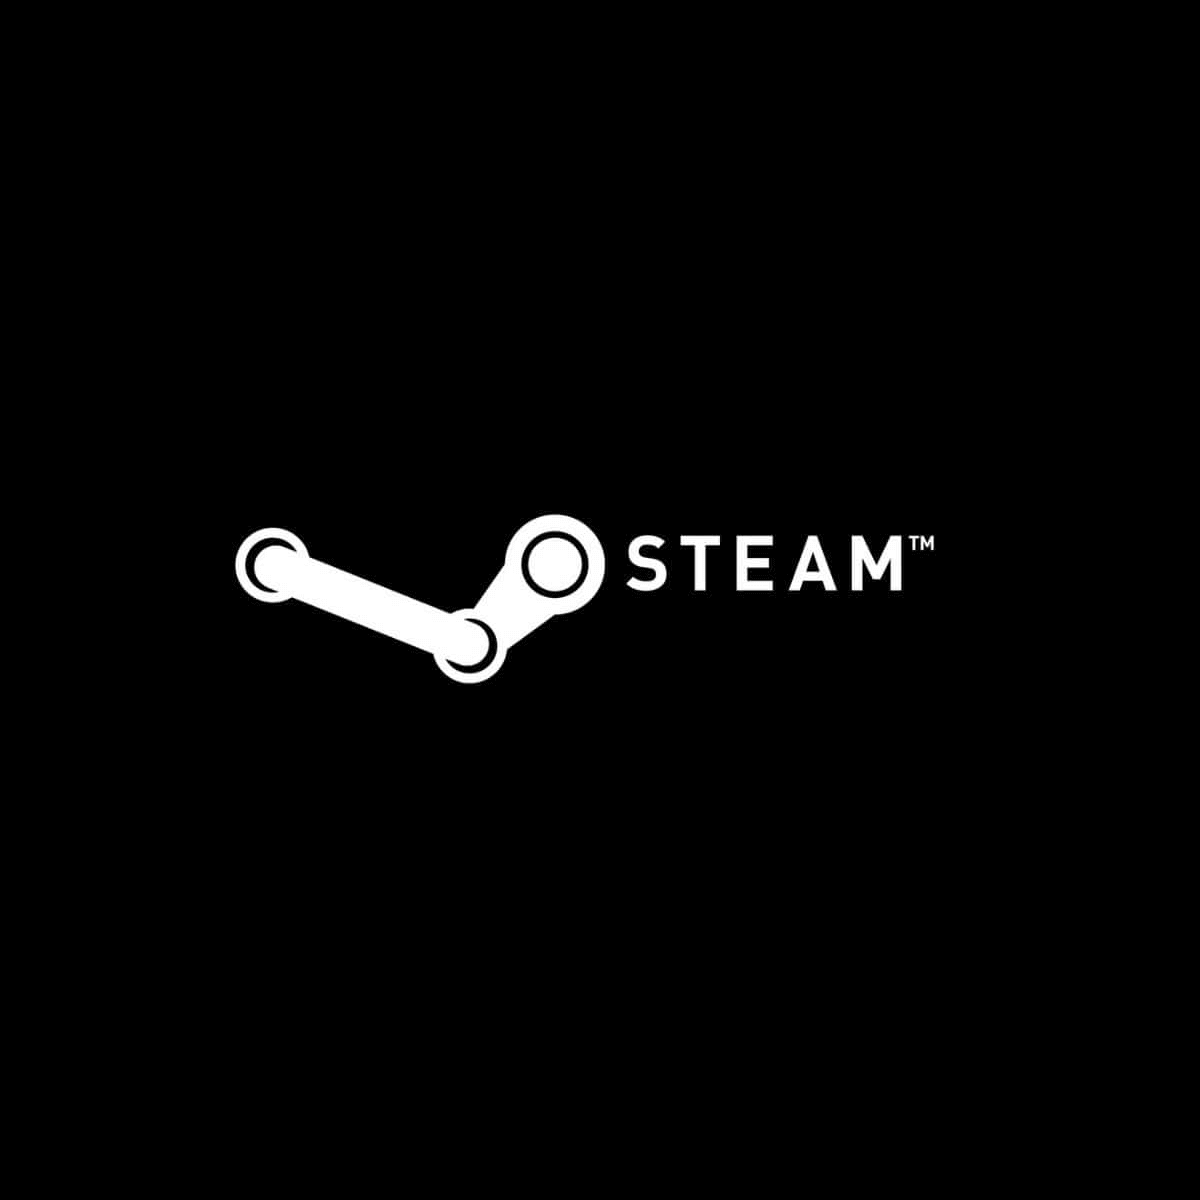 slow steam download speed